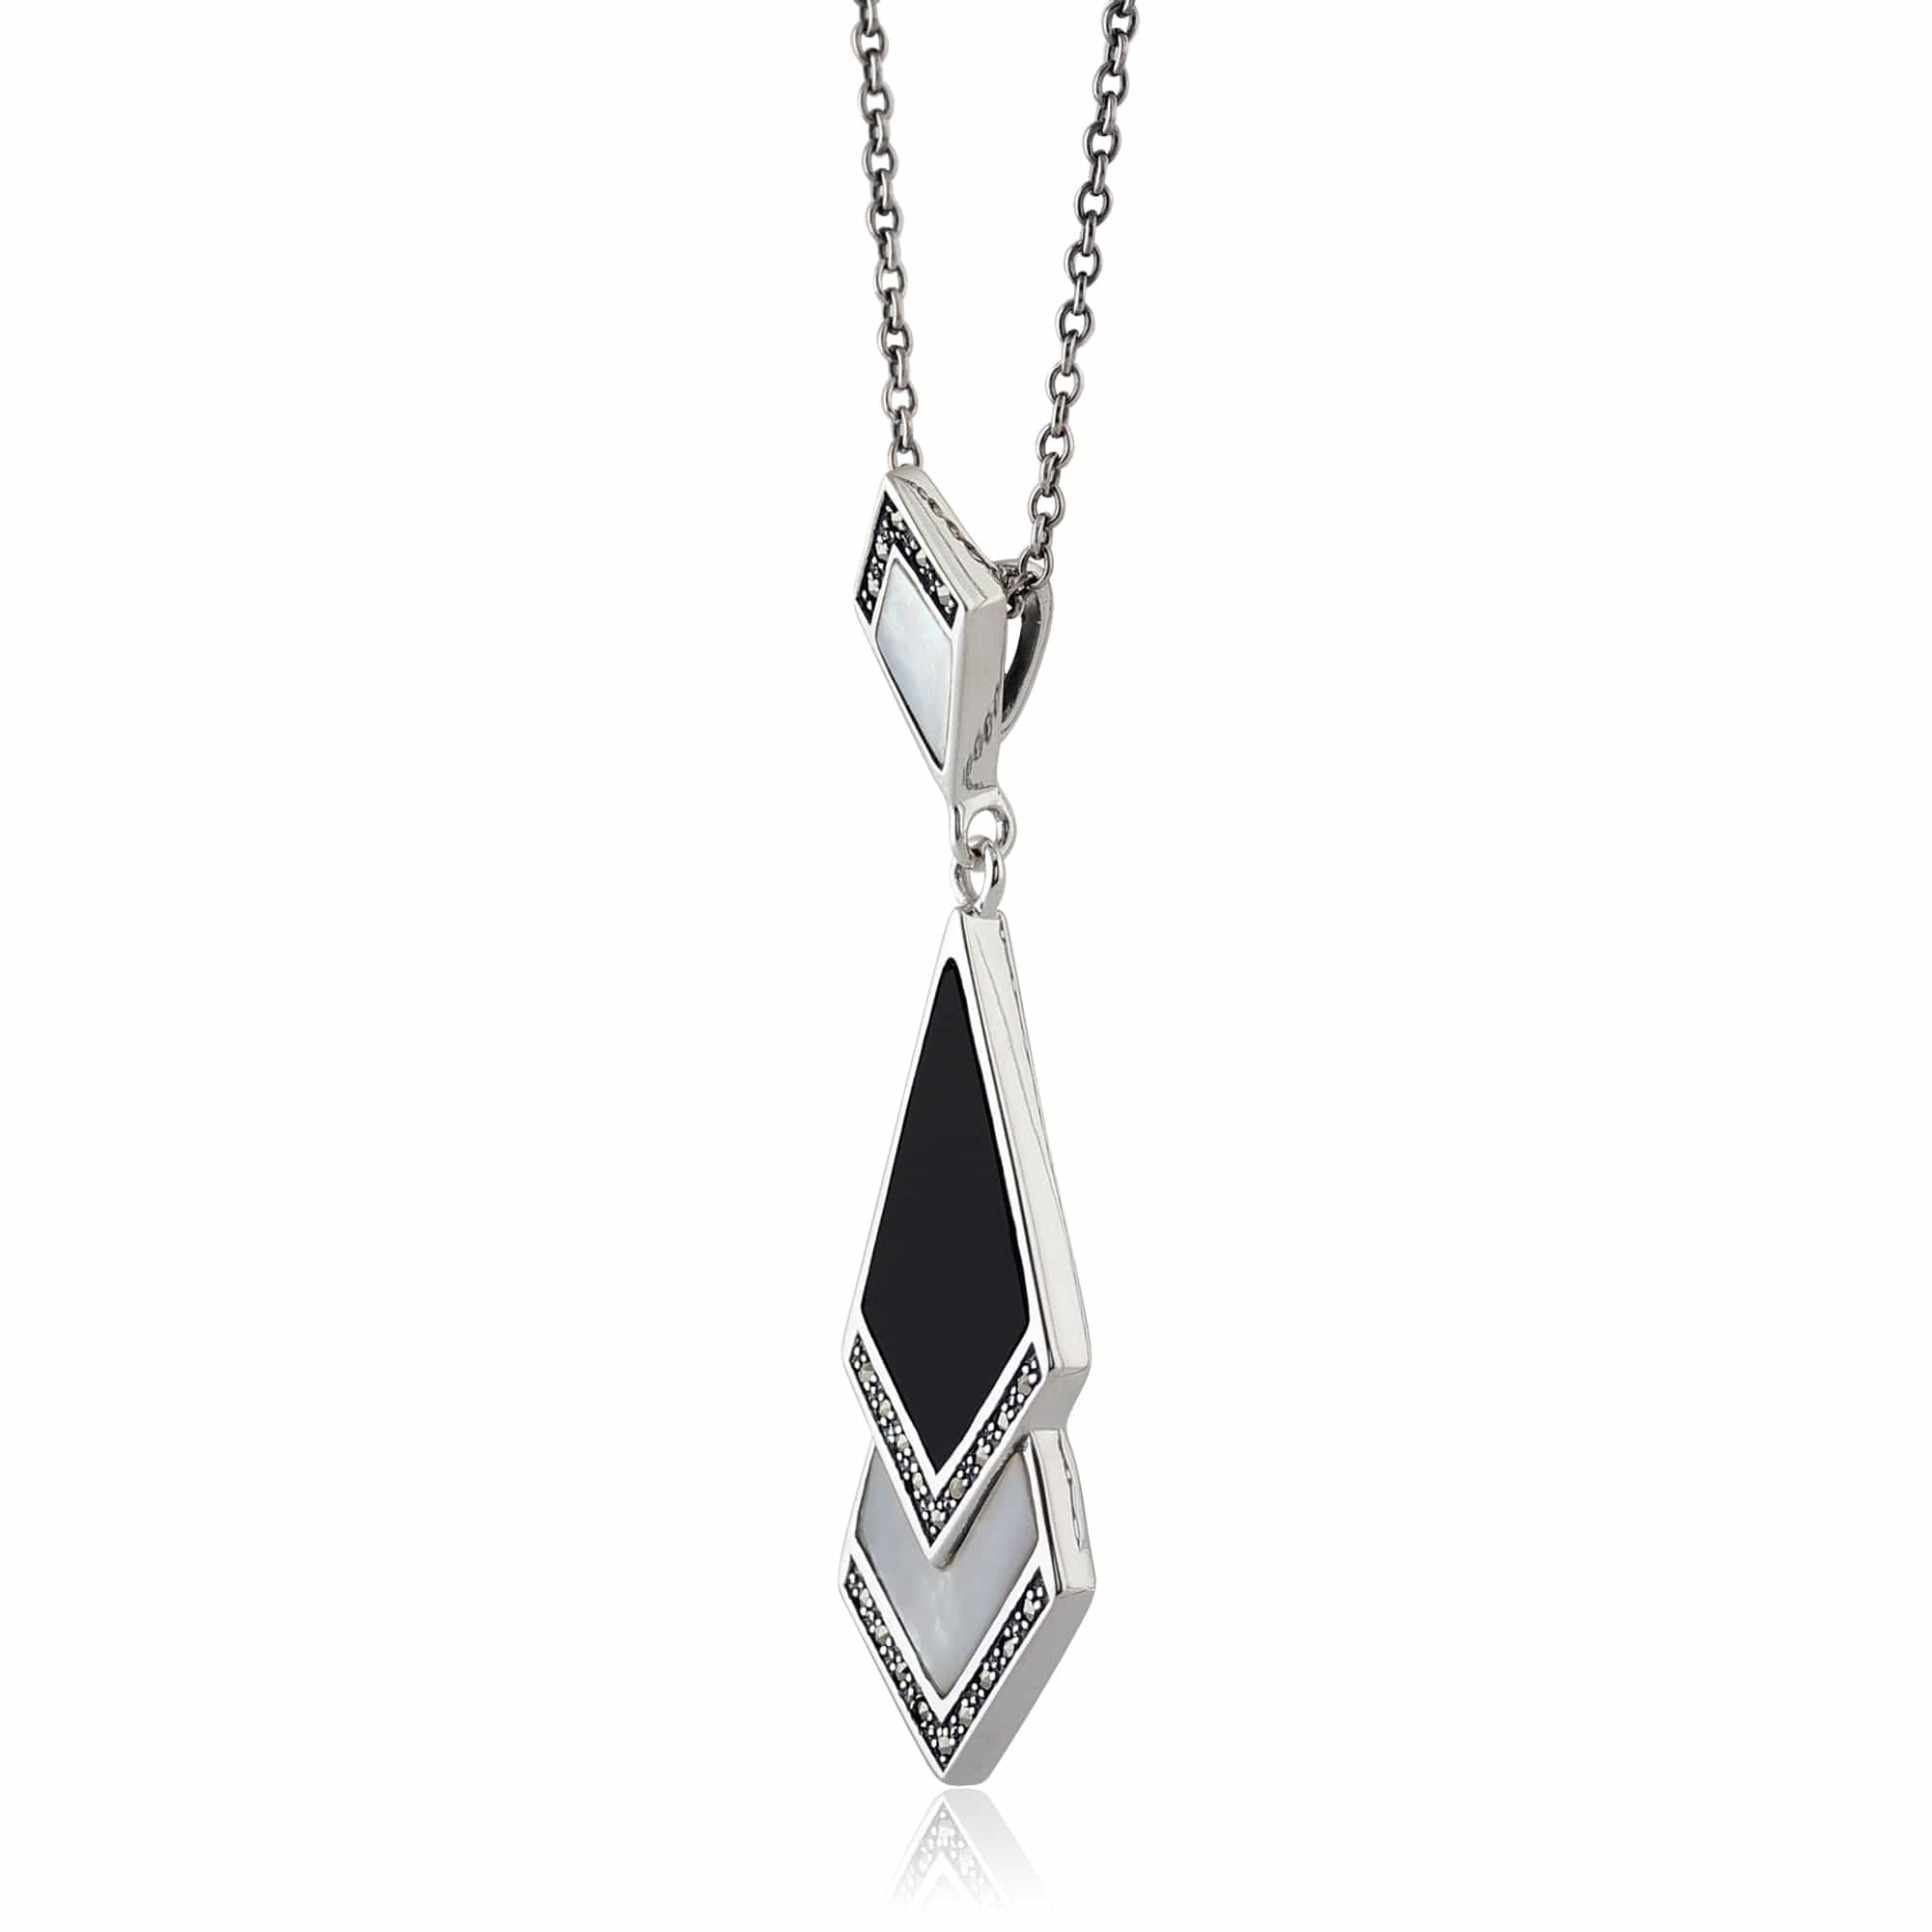 214E615201925-214N419501925 Art Deco Style Style Black Onyx & Mother of Pearl Fan Drop Earrings & Necklace Set in 925 Sterling Silver 5